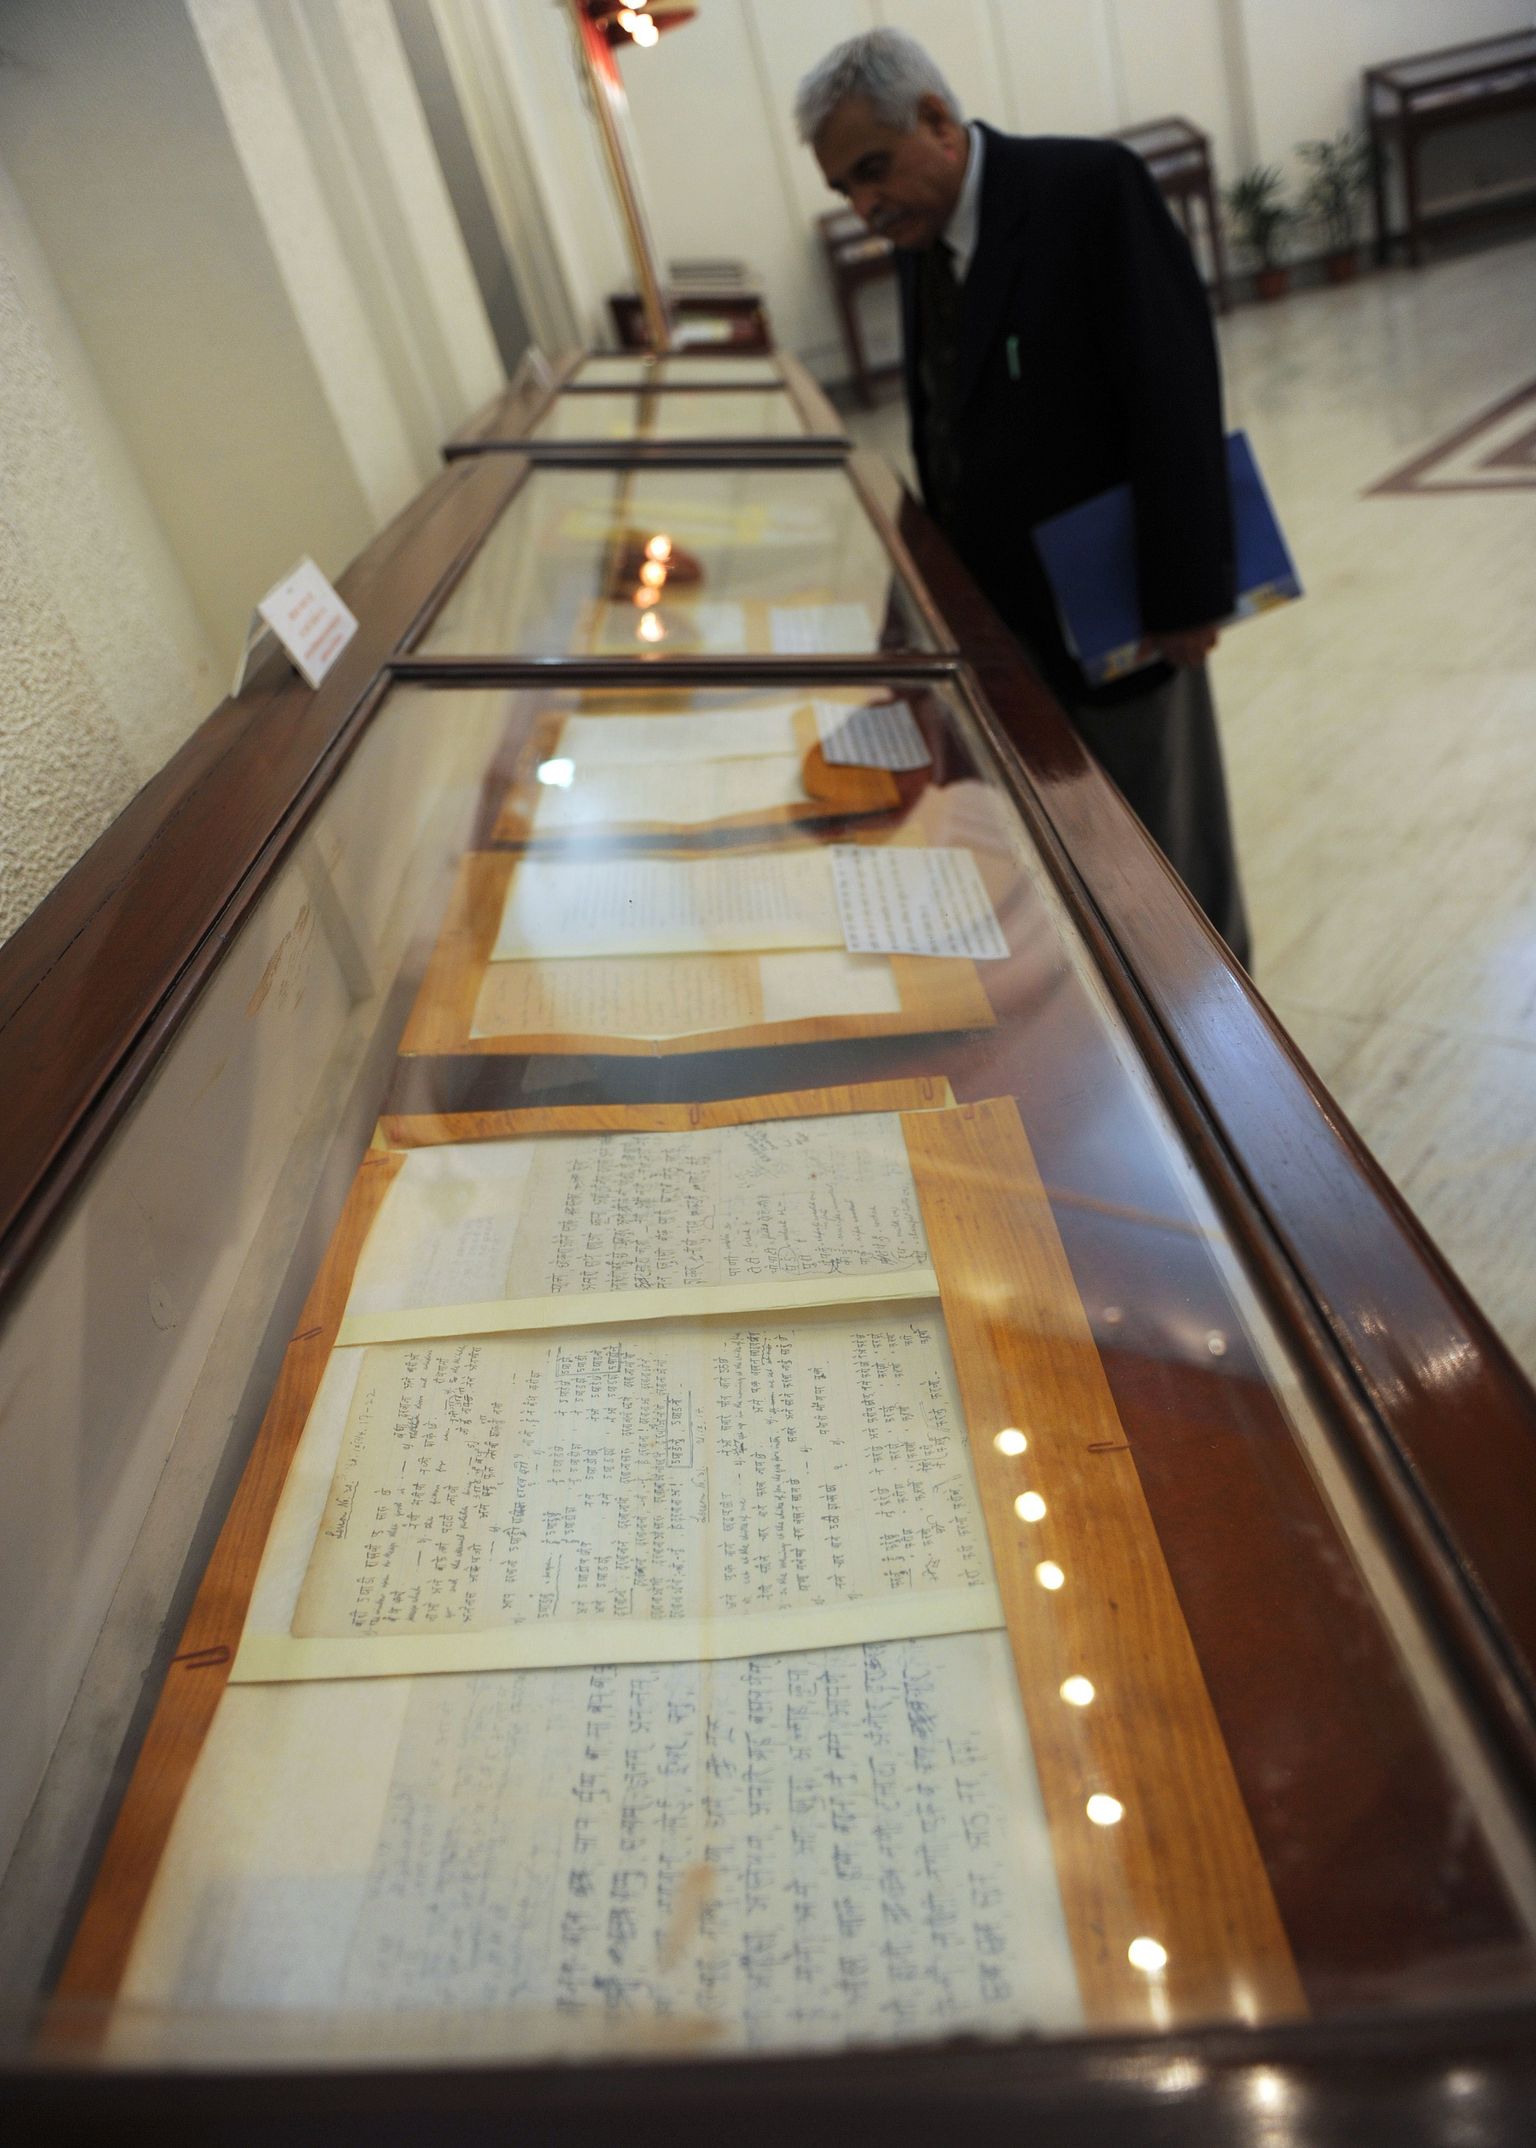 Indias pandi näitusele kirjadekollektsioon, mida kirjutasid teineteisele India iseseisvuse eest võidelnud Mahatma Gandhi ja lõuna-aafriklane, Saksamaa päritolu juut Hermann Kallenbach